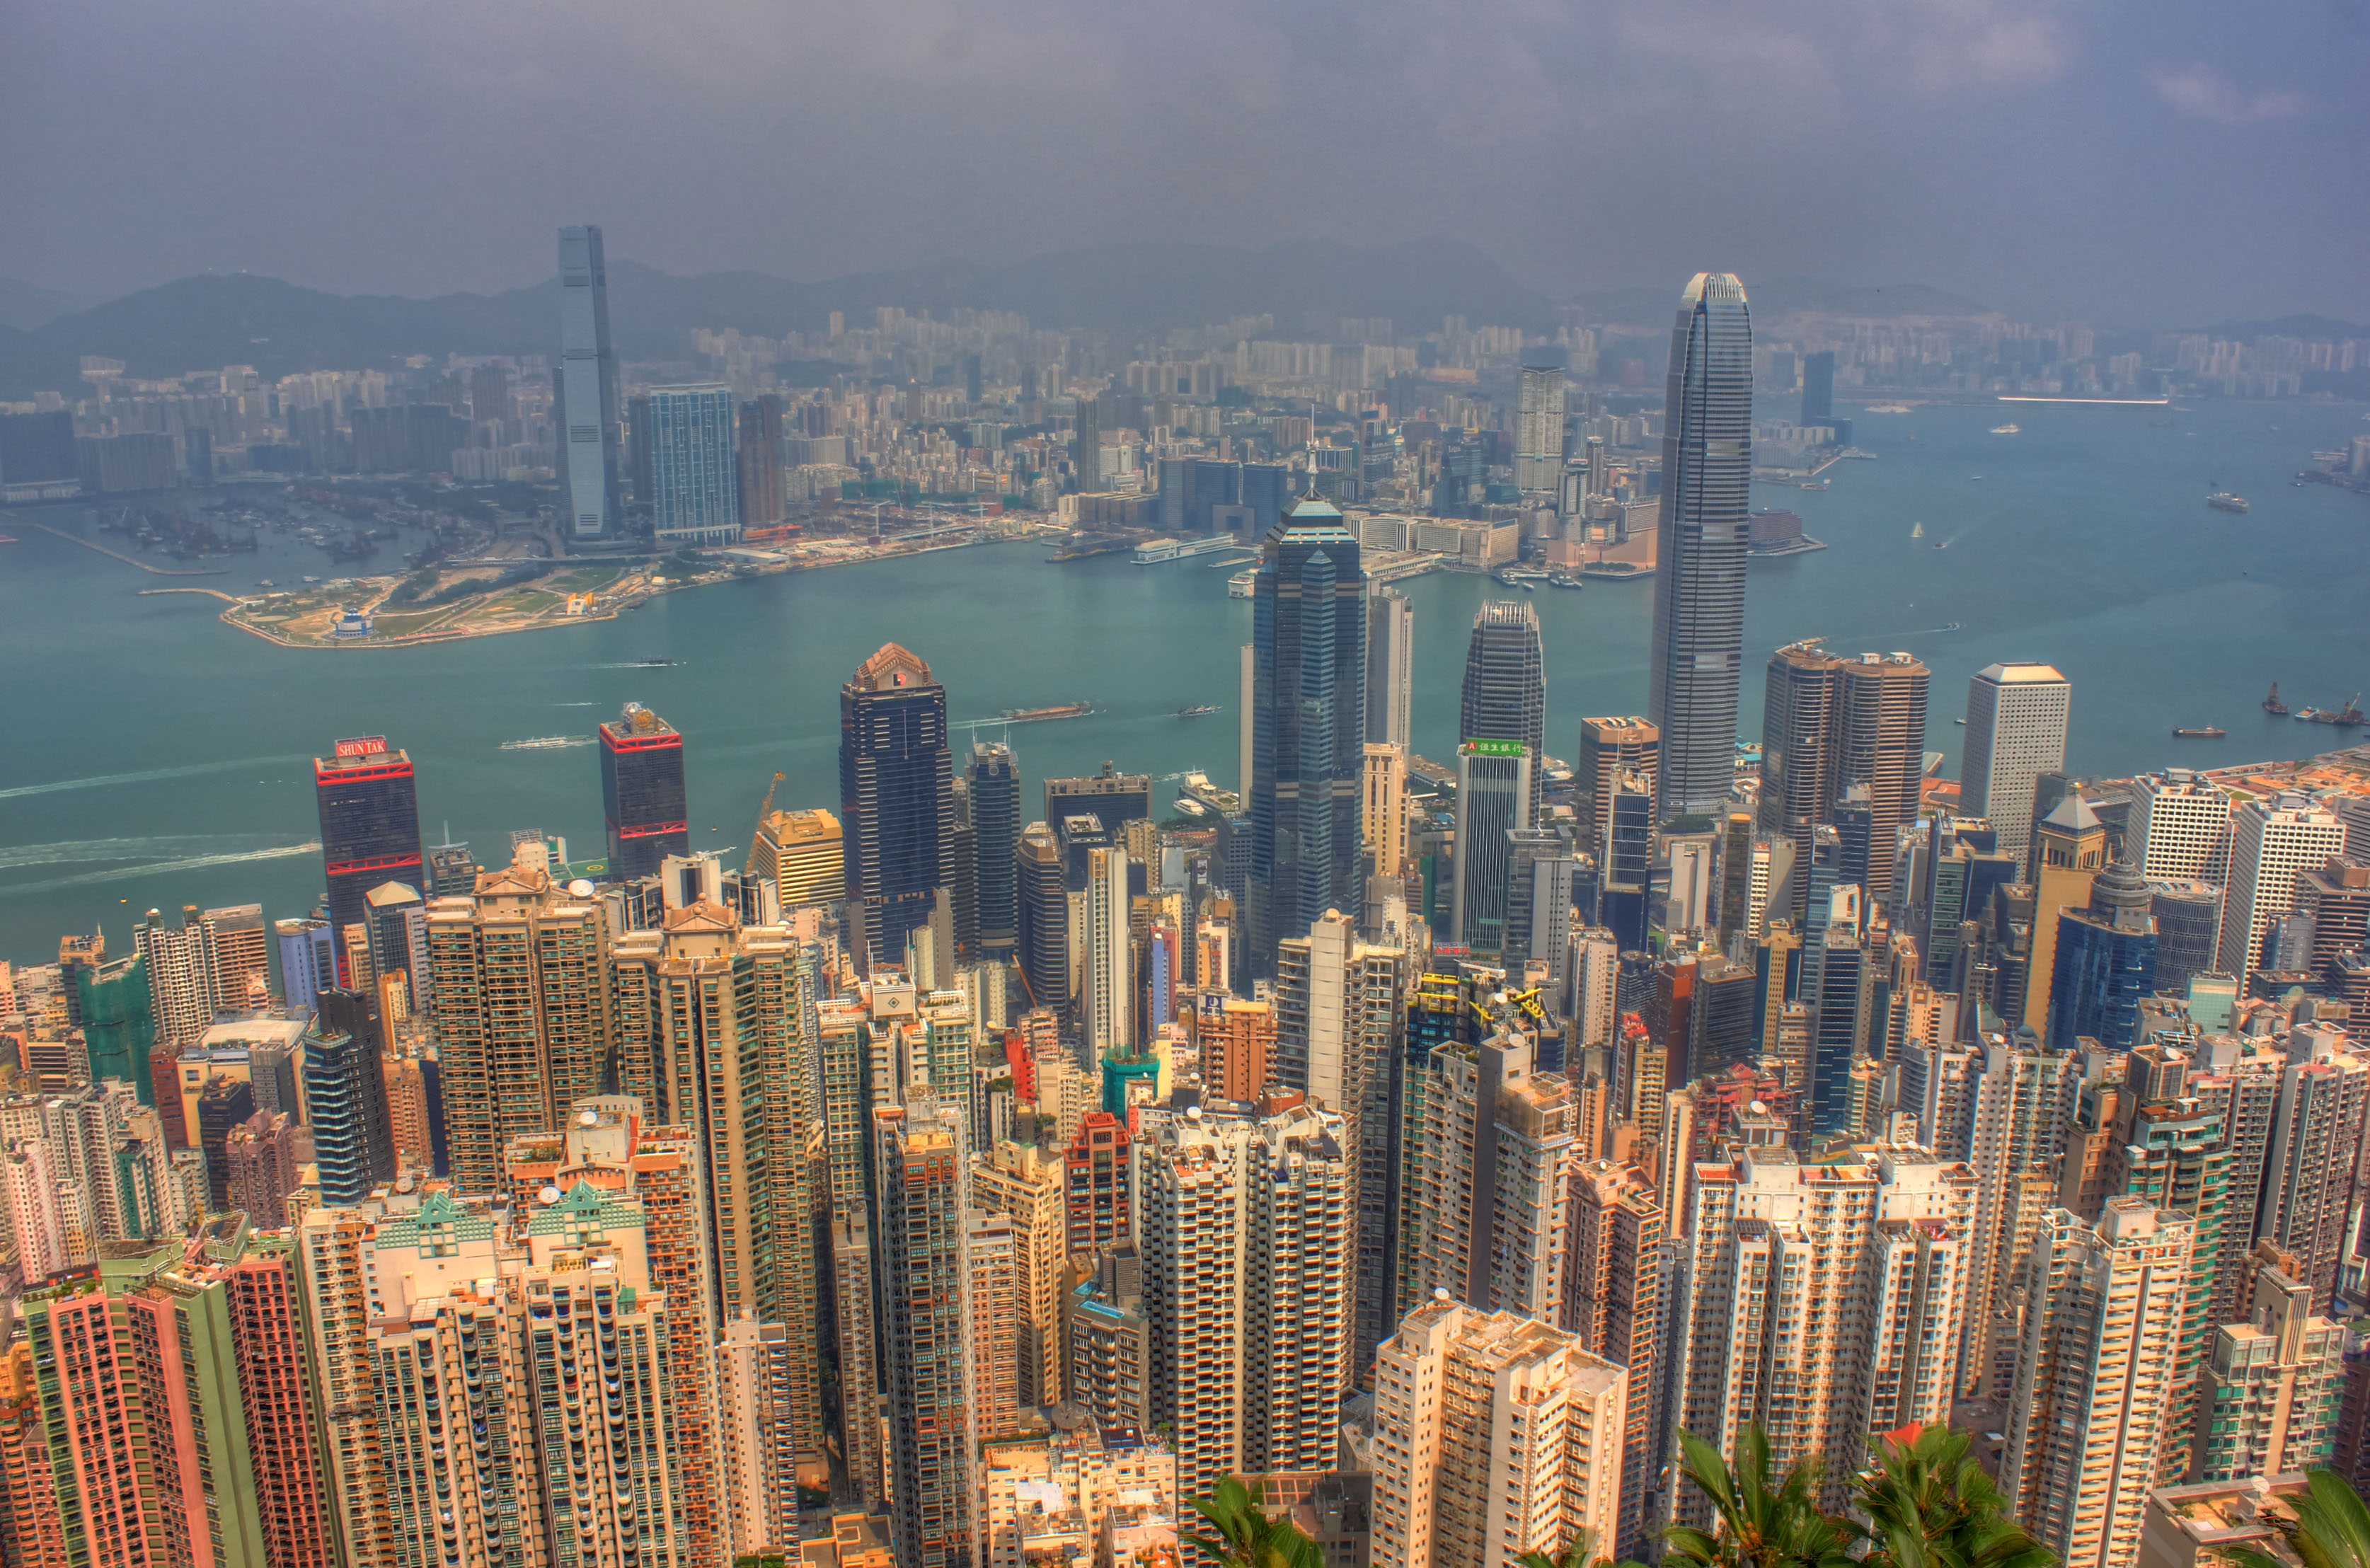 Hong Kong City View